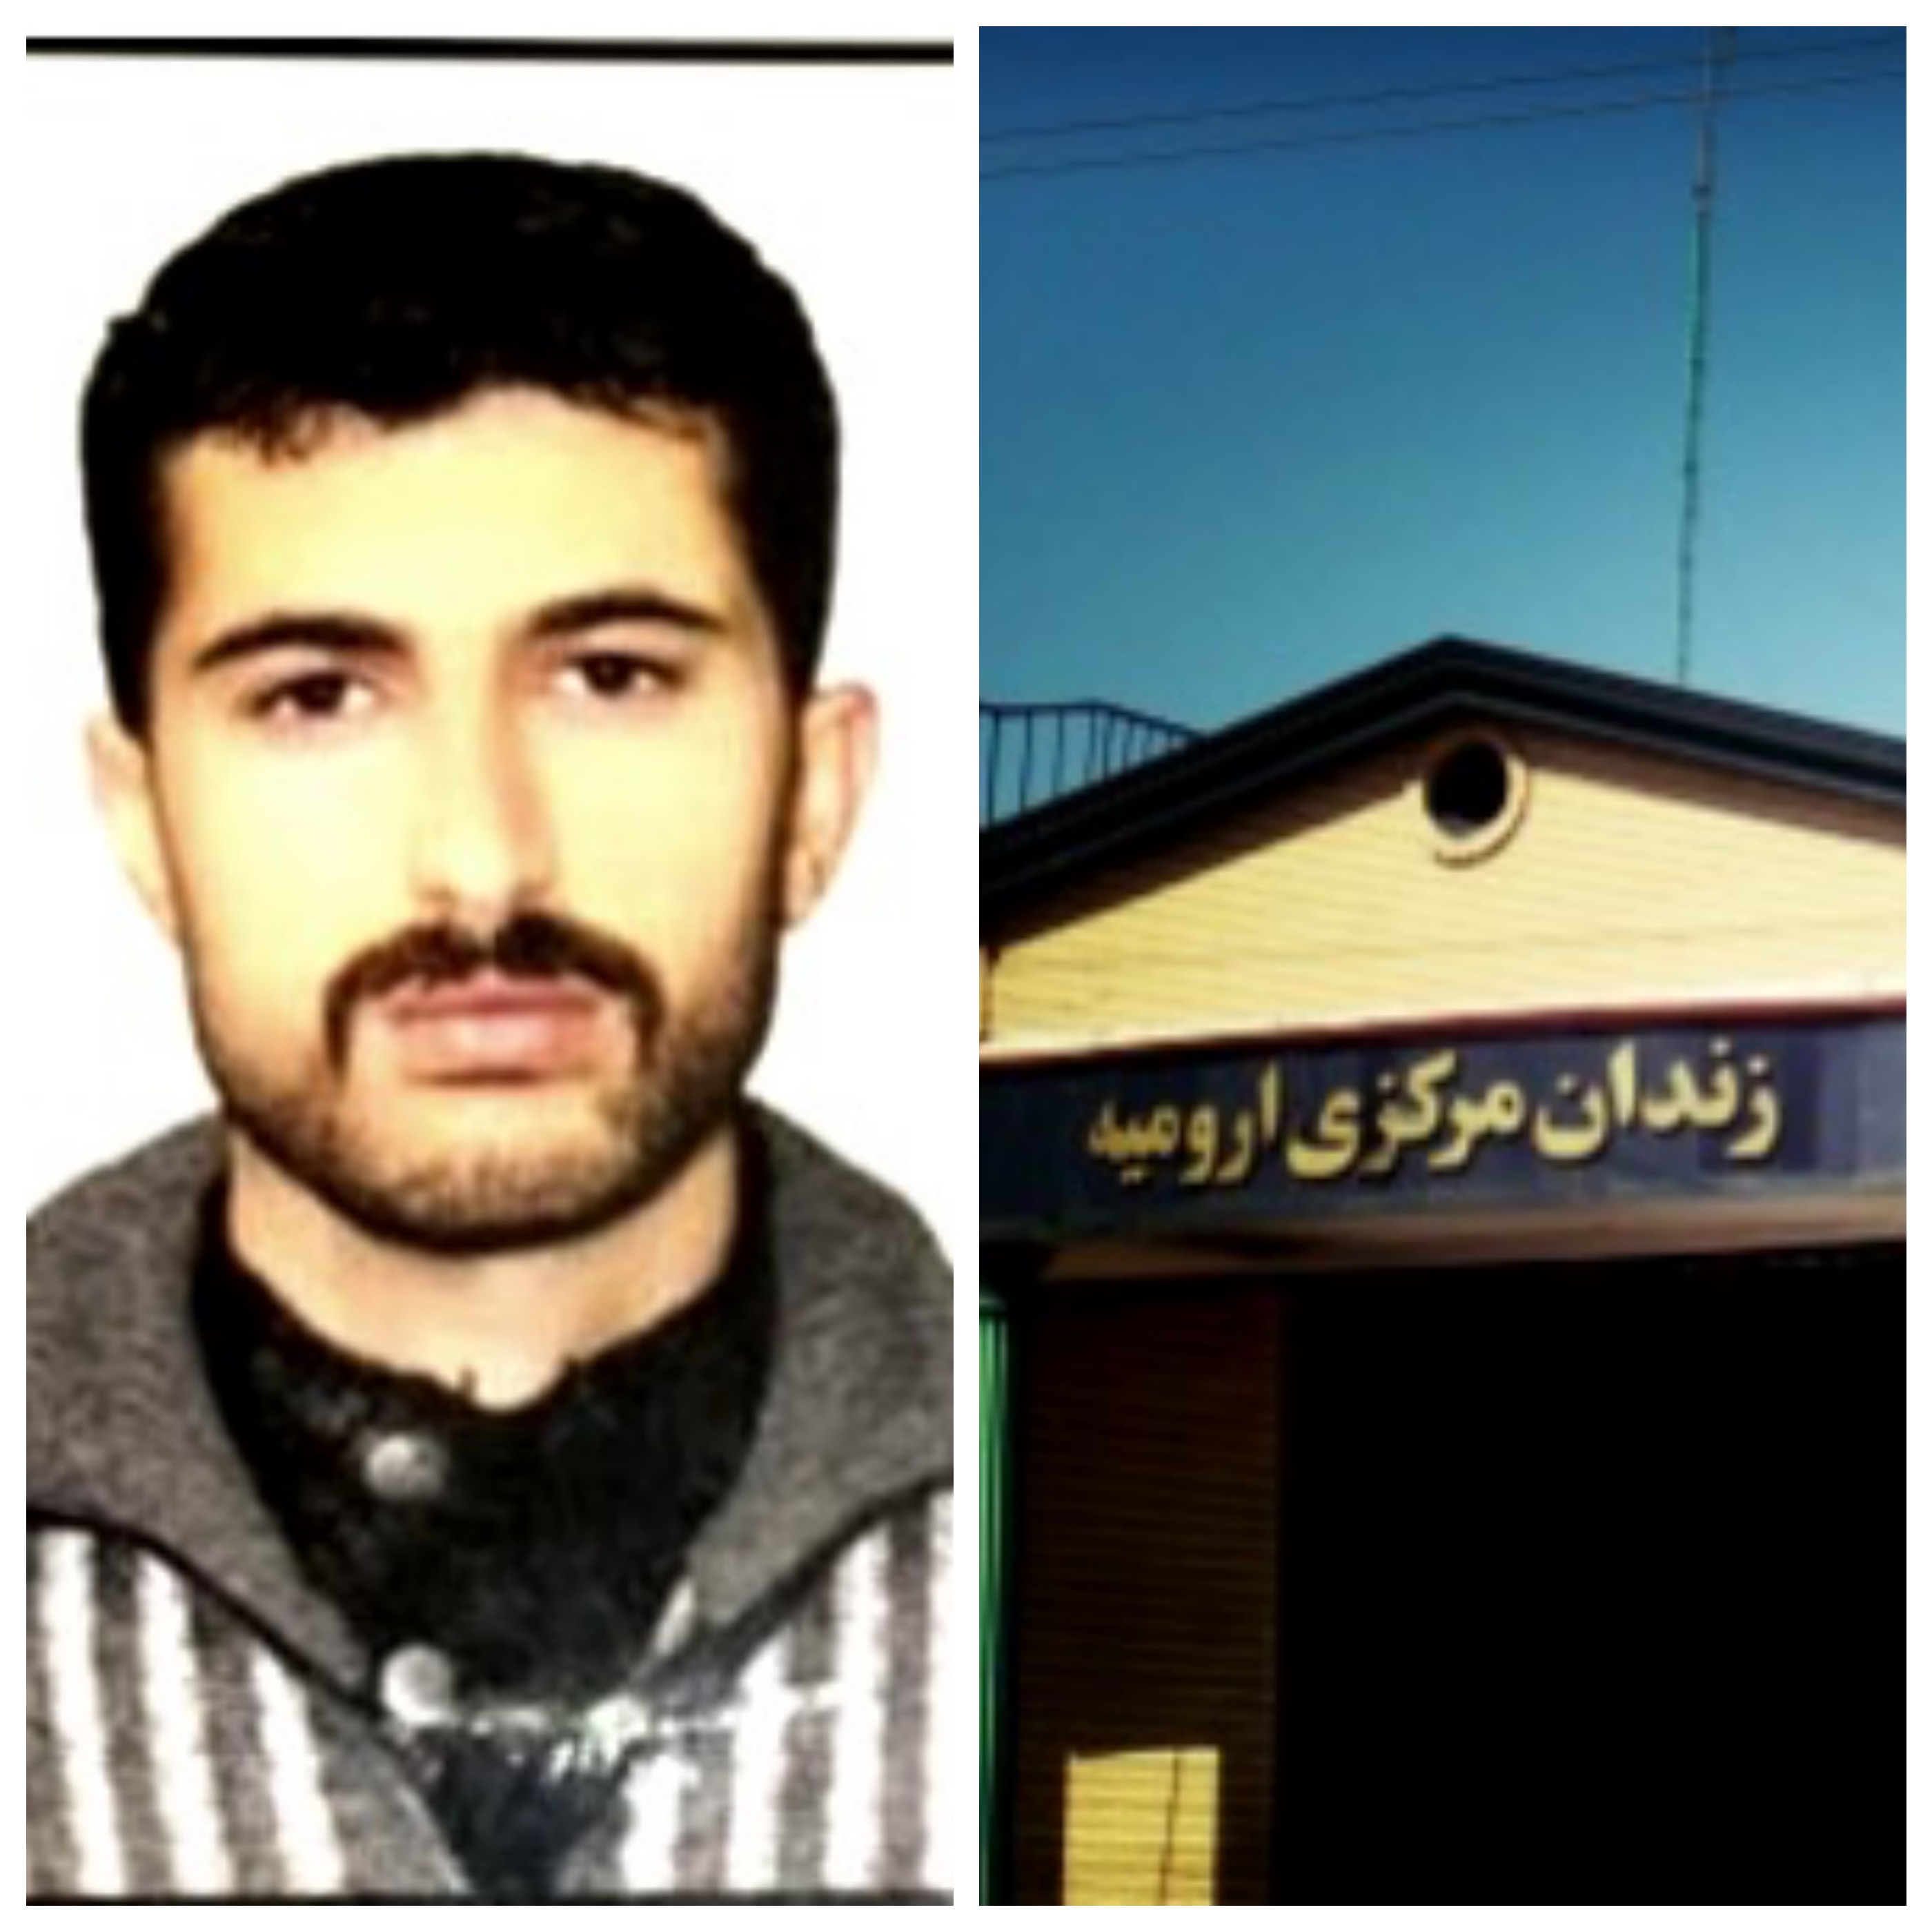 پس از ده روز بازجویی و اعتصاب غذا؛ انتقال کمال حسن رمضان از بازداشتگاه سپاه به زندان ارومیه